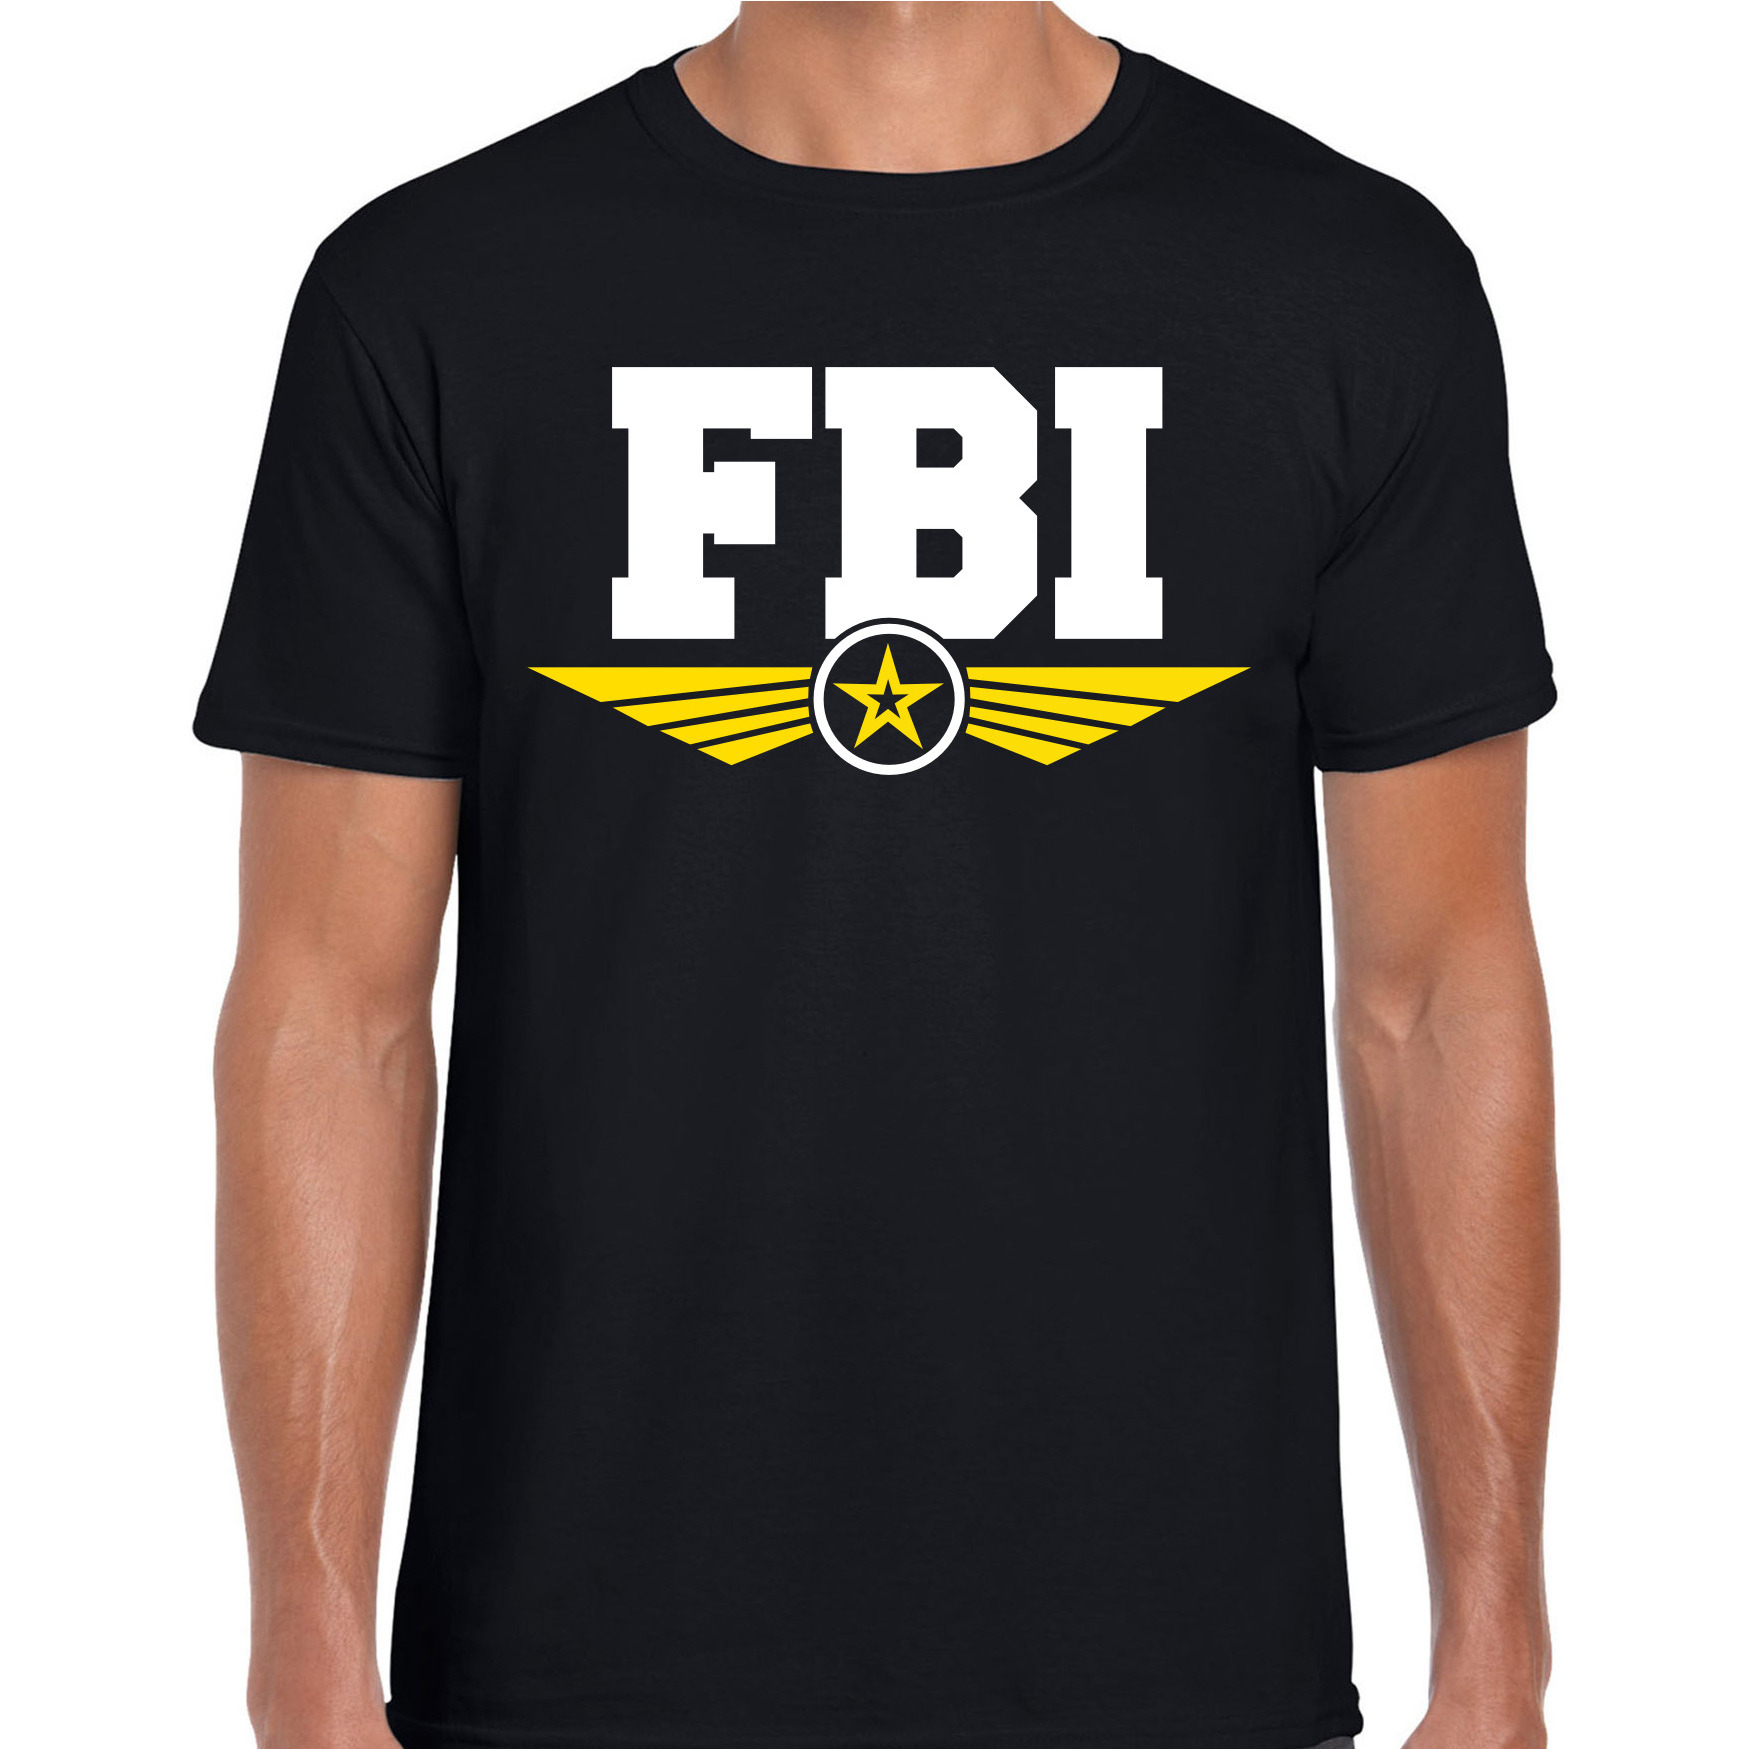 FBI agent tekst t-shirt zwart voor heren